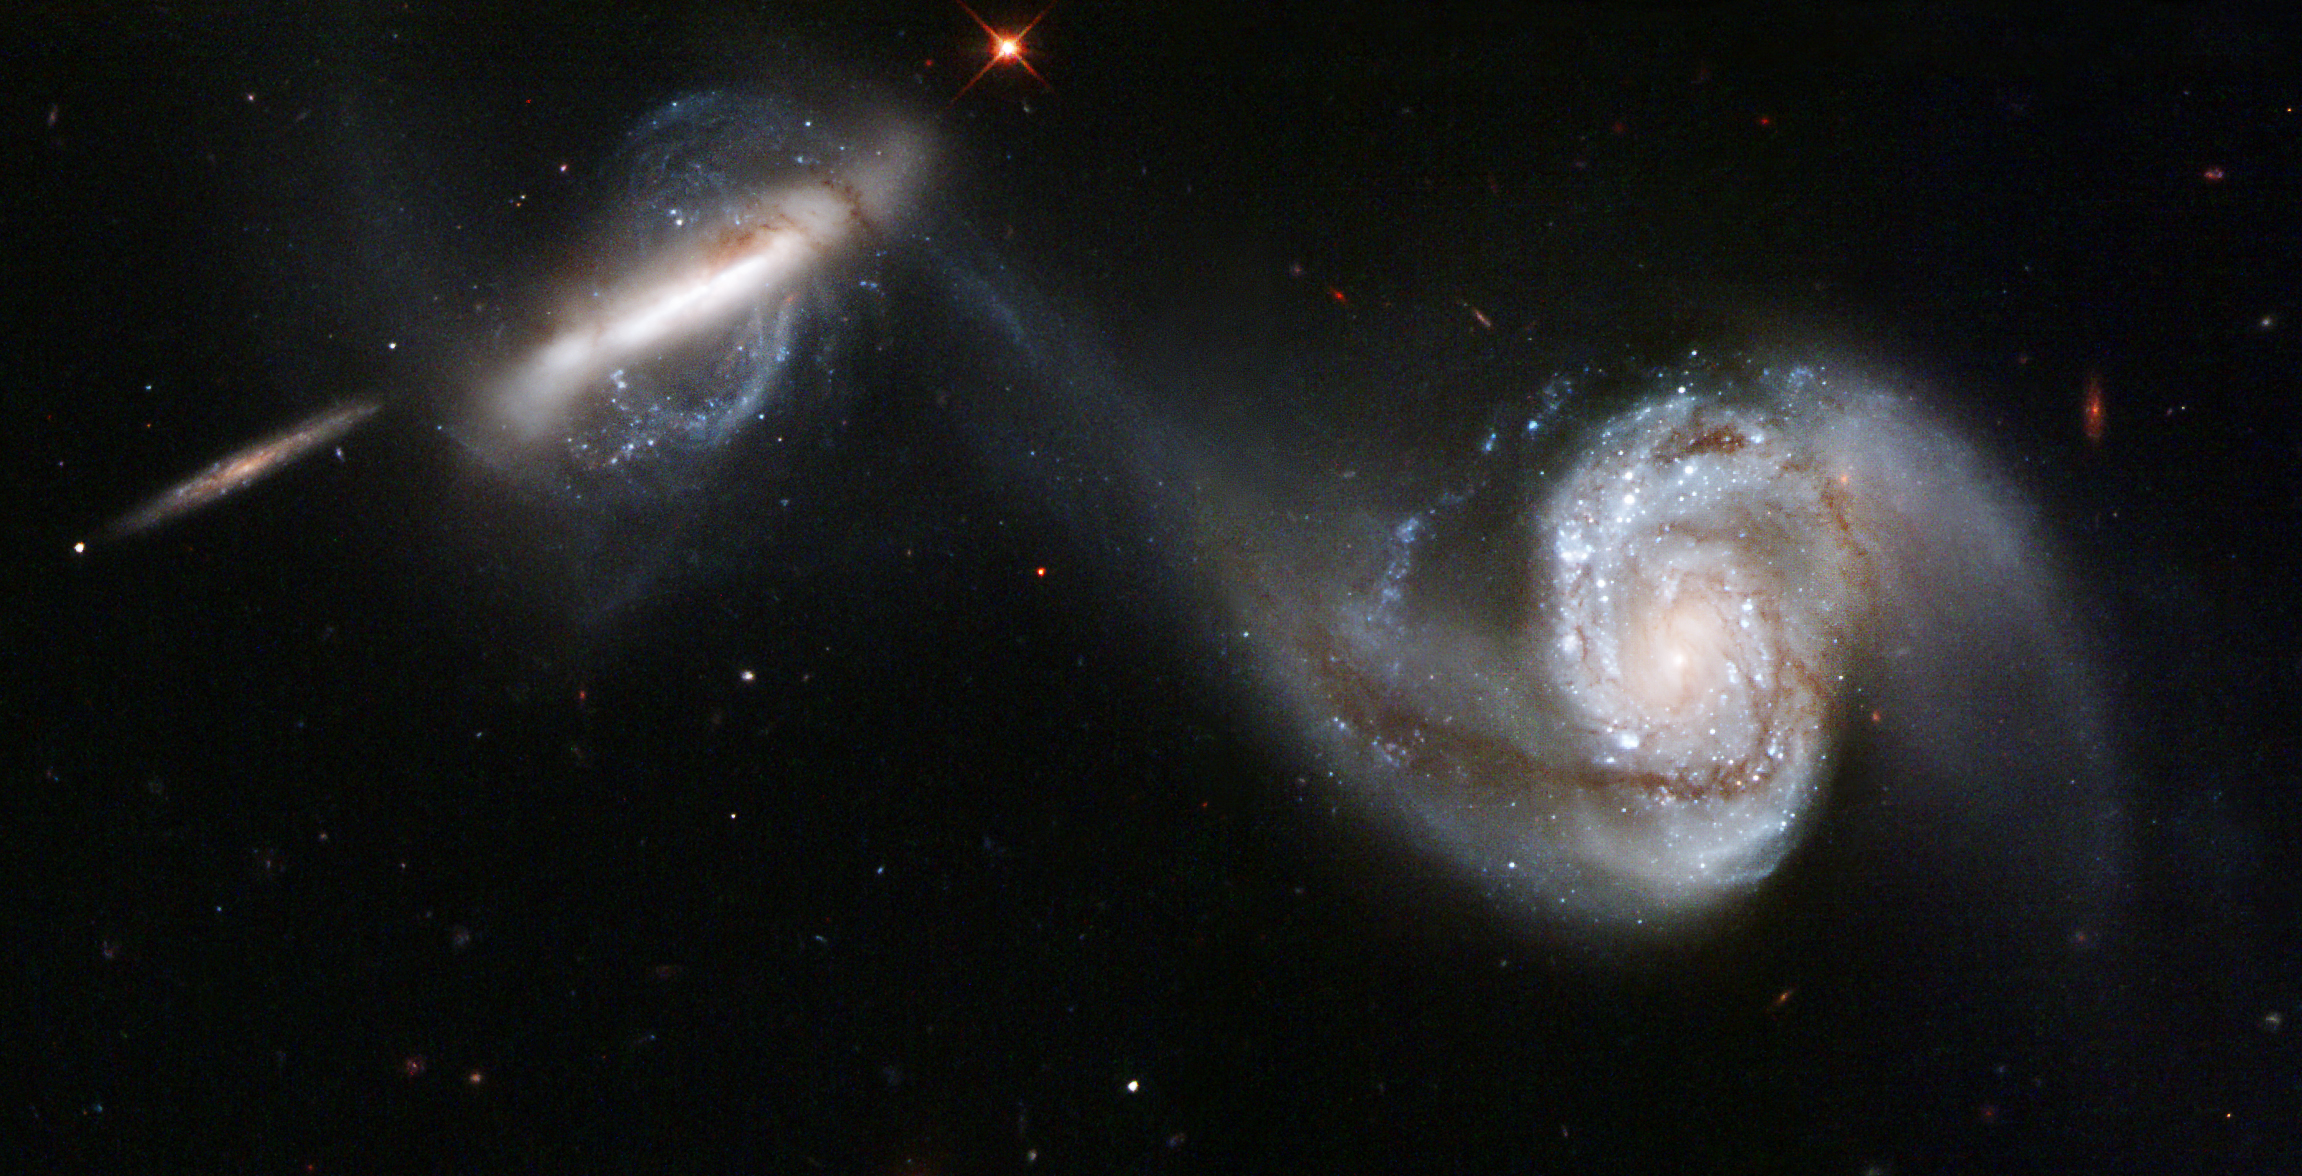 Pekulyarnaya para galaktik Arp 87